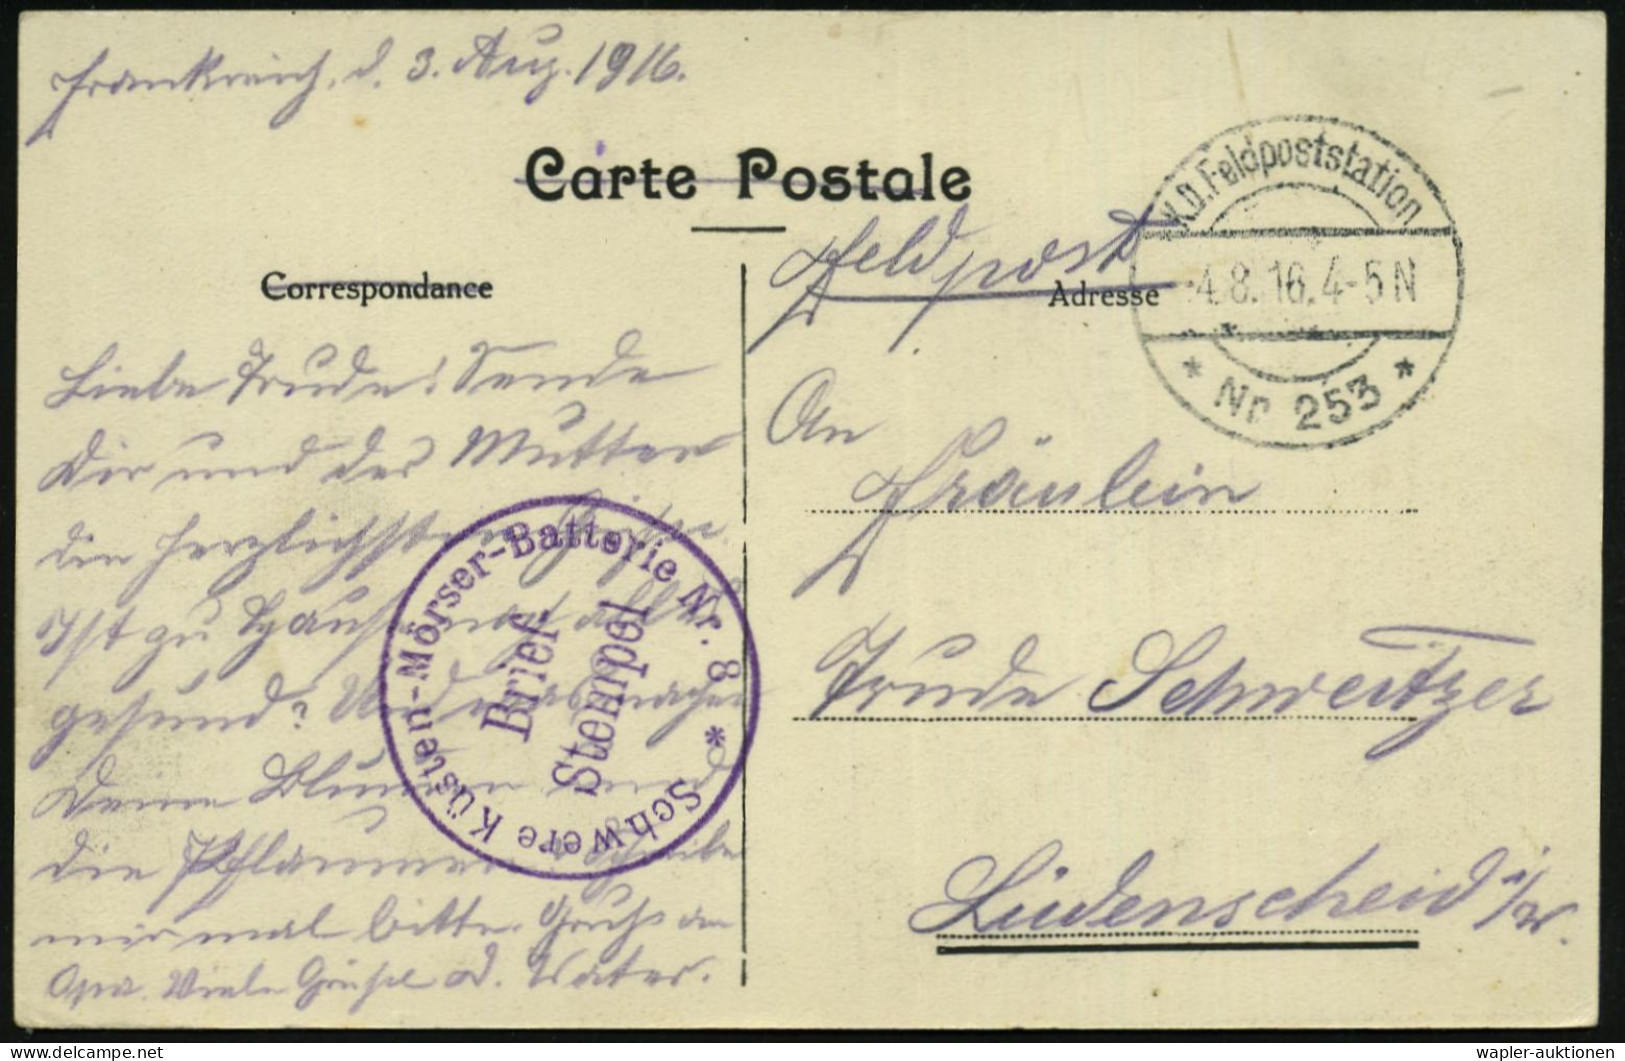 DEUTSCHE MARINE-DIENST- & FELDPOST I. WELTKRIEG 1914-18 (OHNE MSP) - GERMAN NAVAL FIELD-POST WW.I (1914-18) - POSTE DE C - Schiffahrt